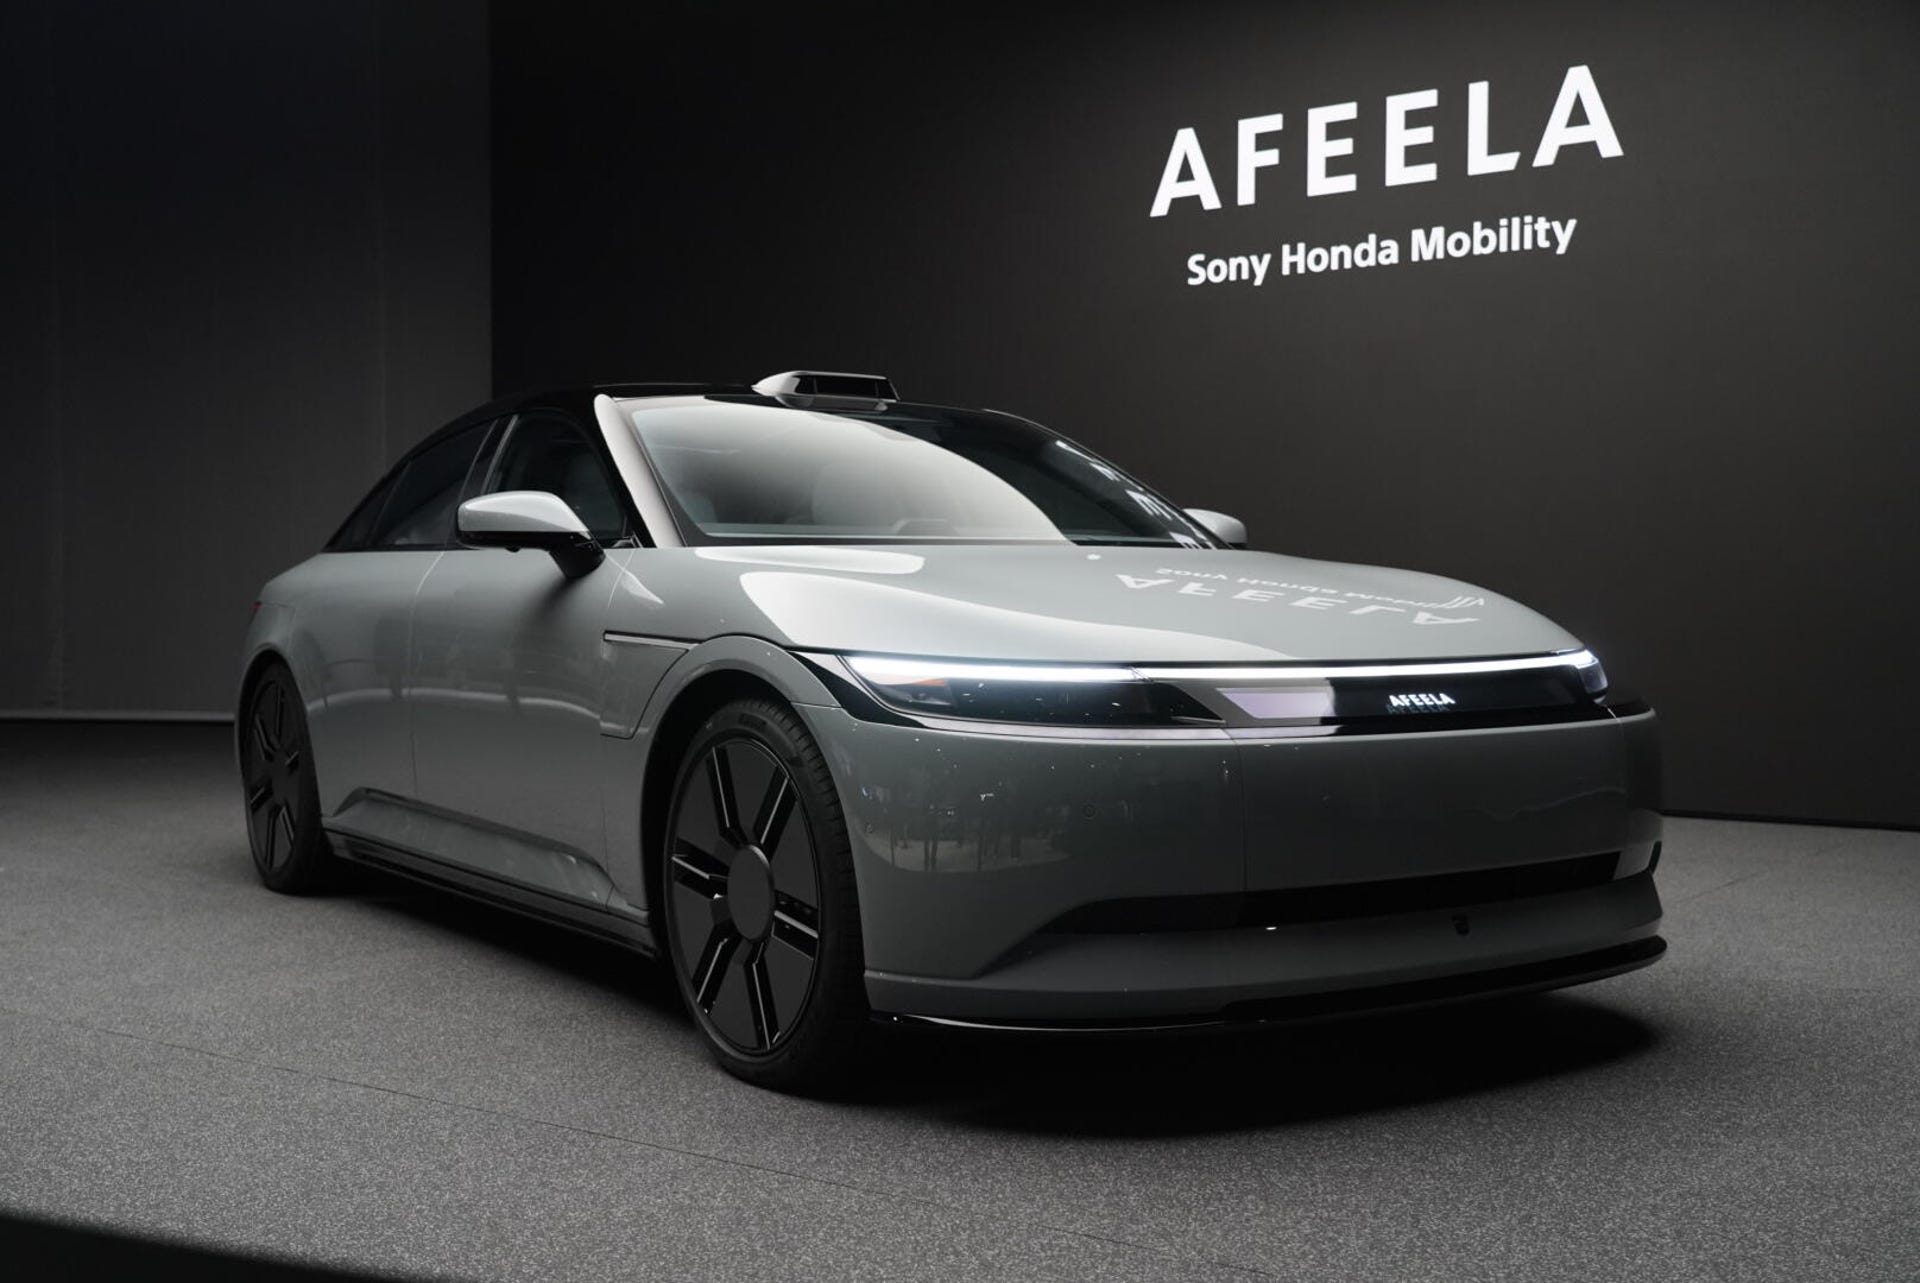 Sony Honda Mobility Afeela EV concept